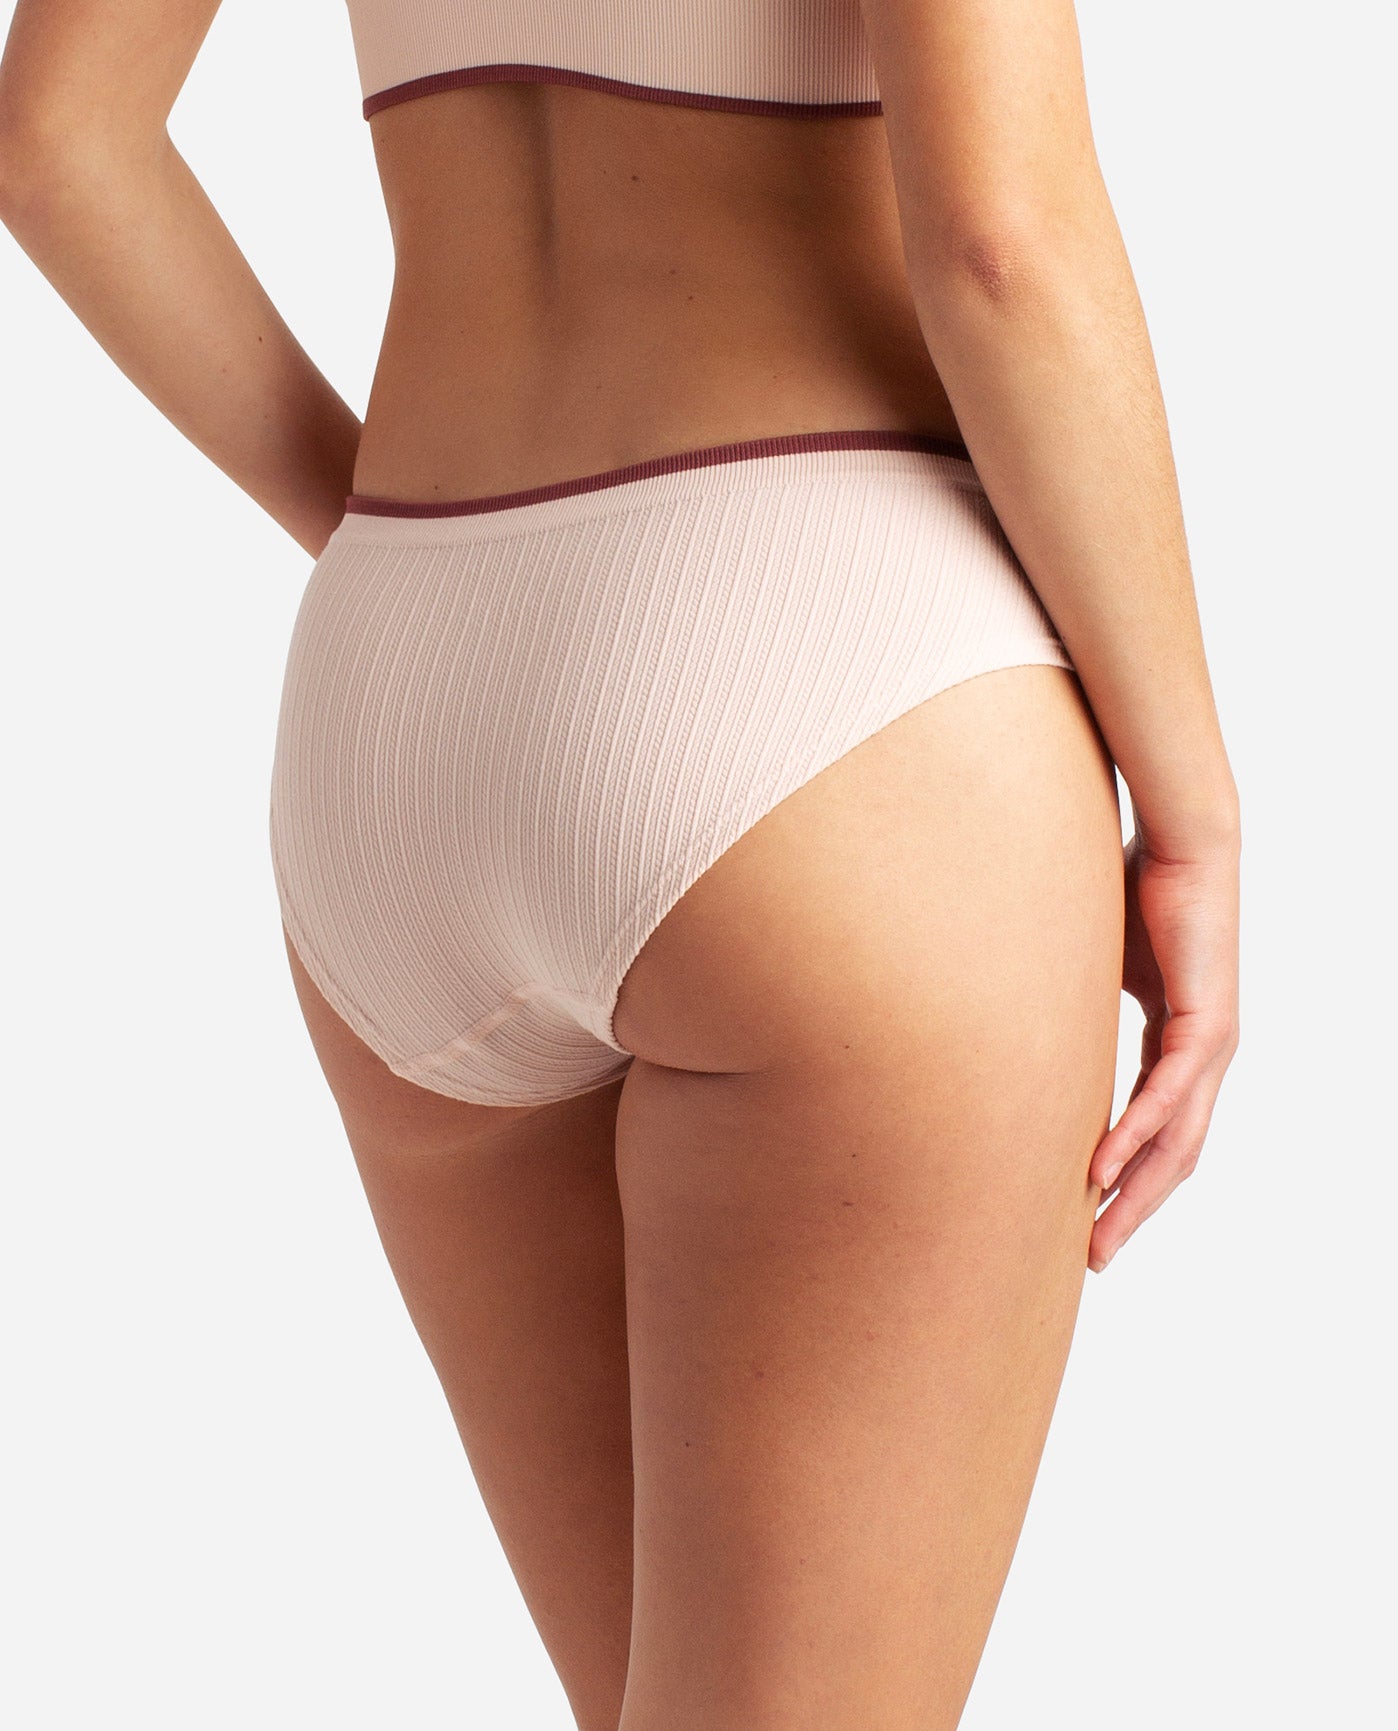 DANSKIN 5-Pack Women's Large Panties Black Ivory Beige Latte Nude